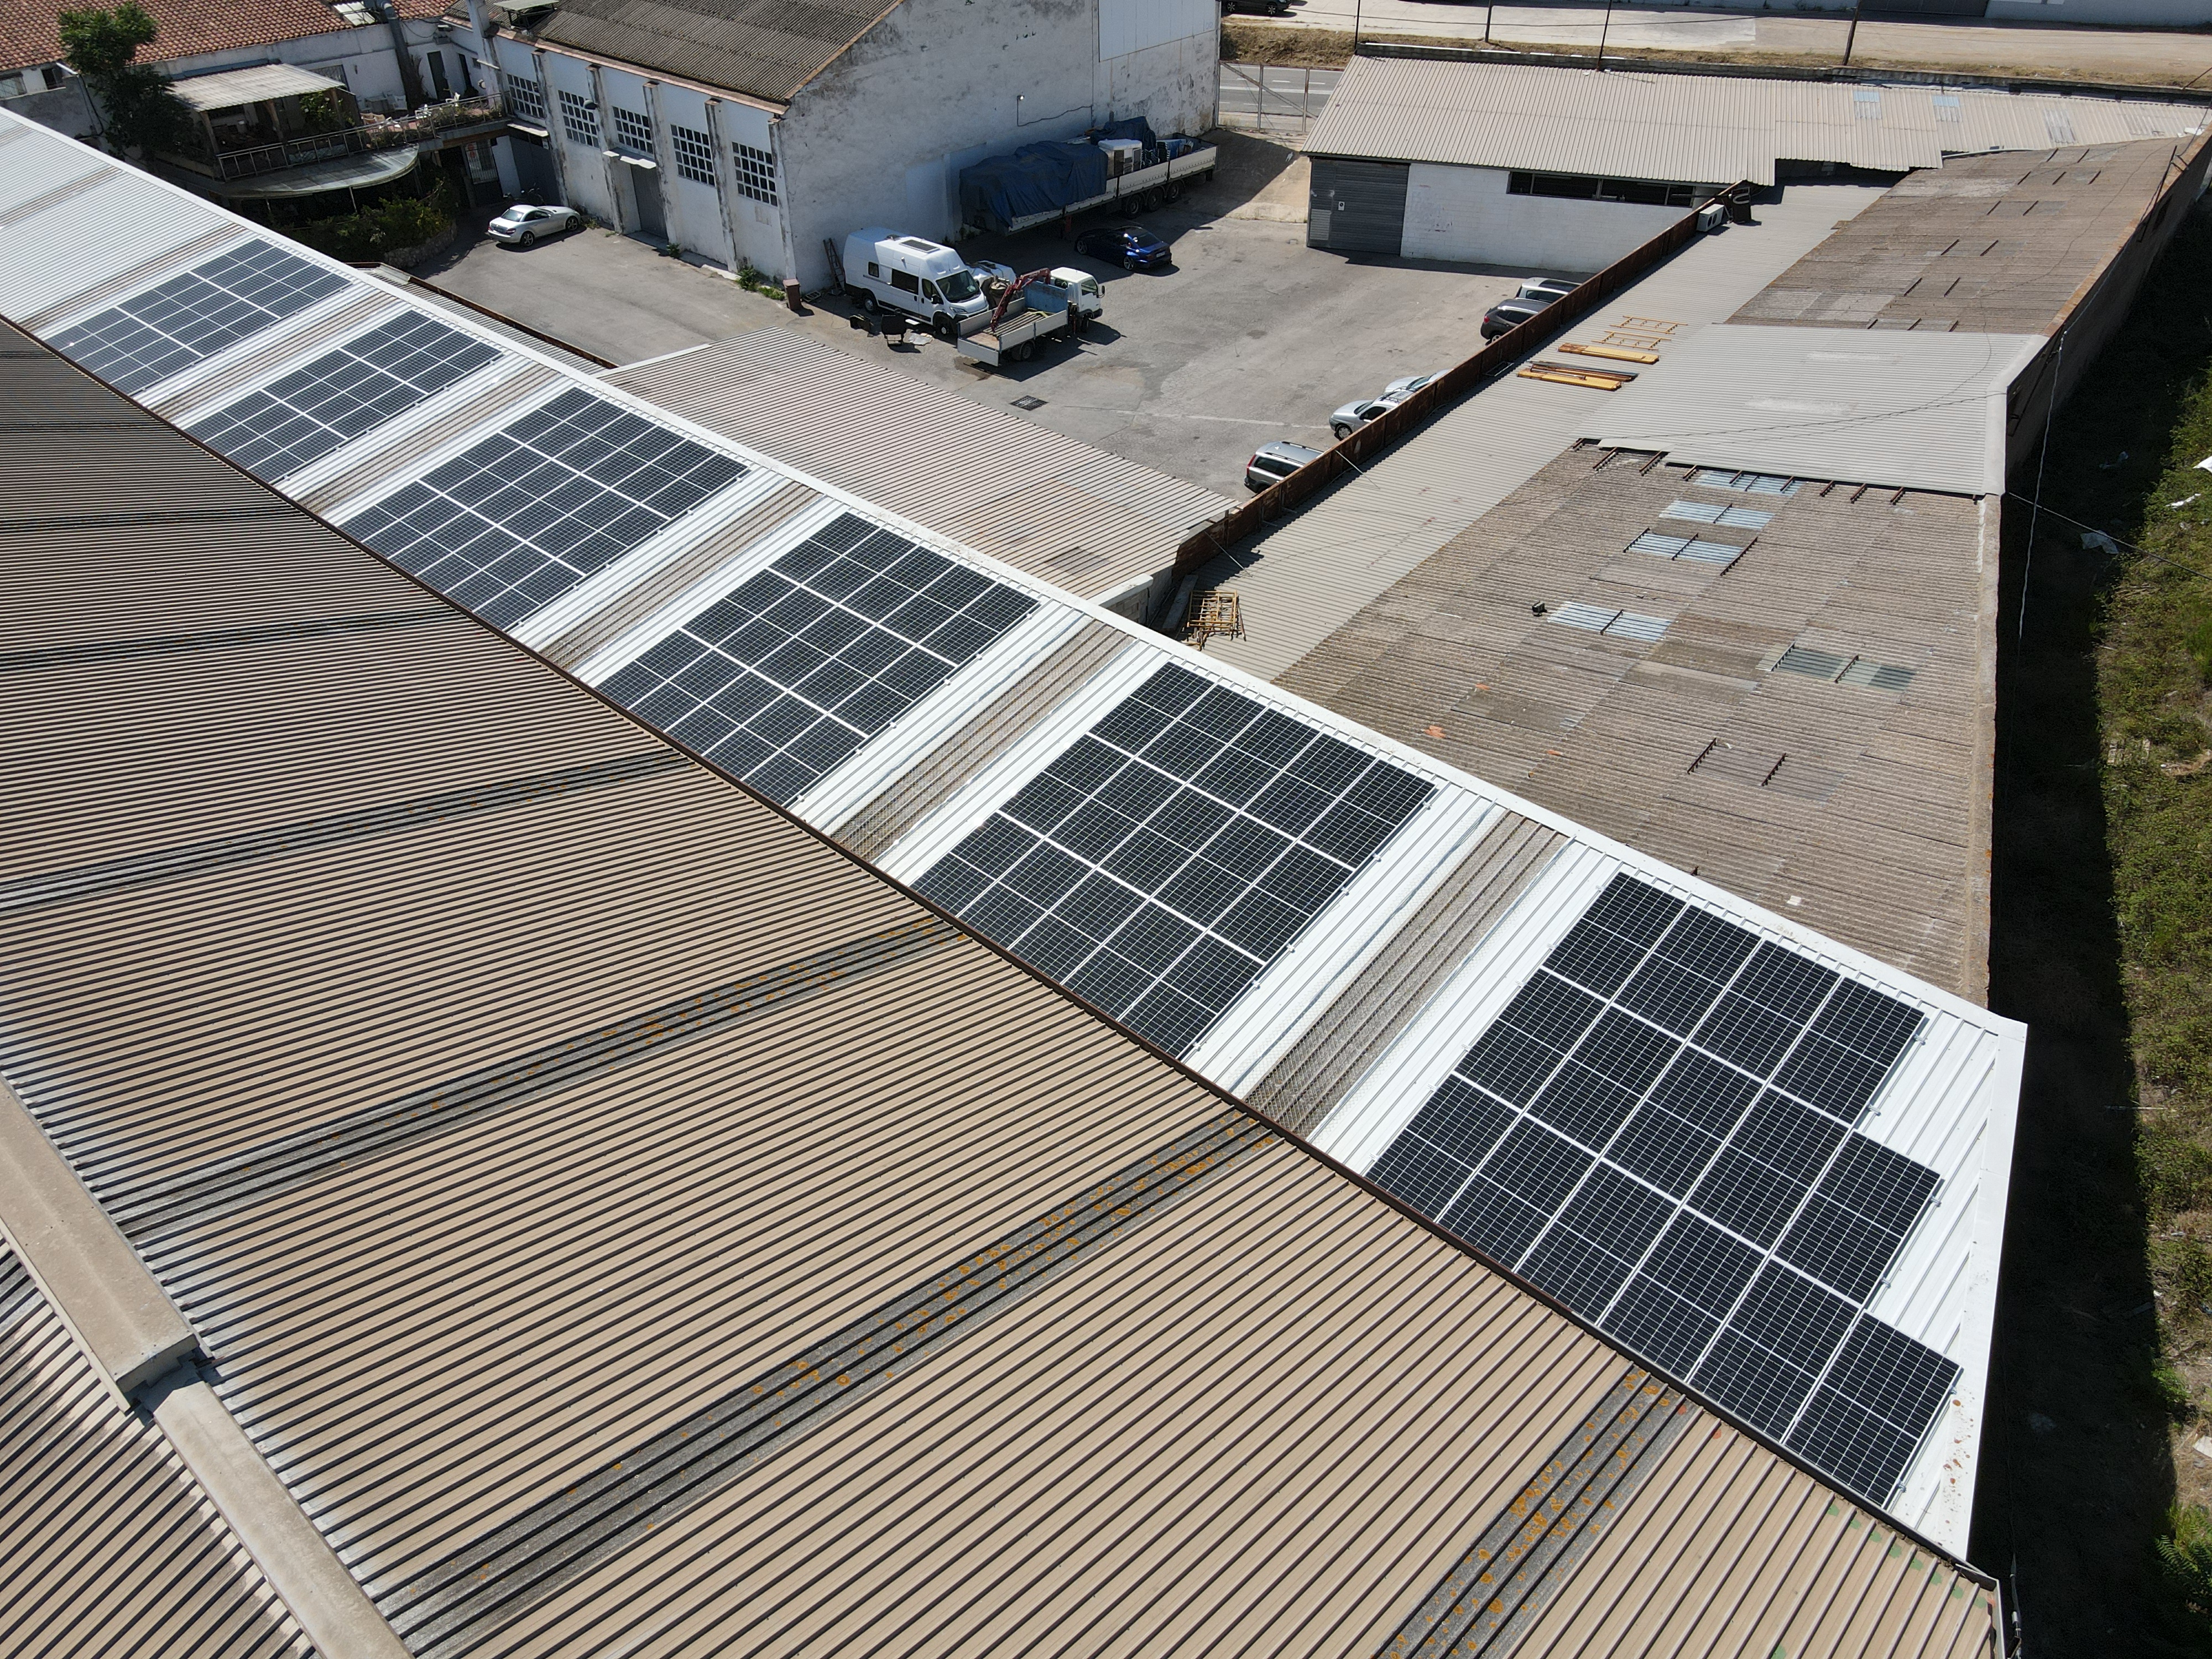 Solargest plaques solars energia fotovoltaica